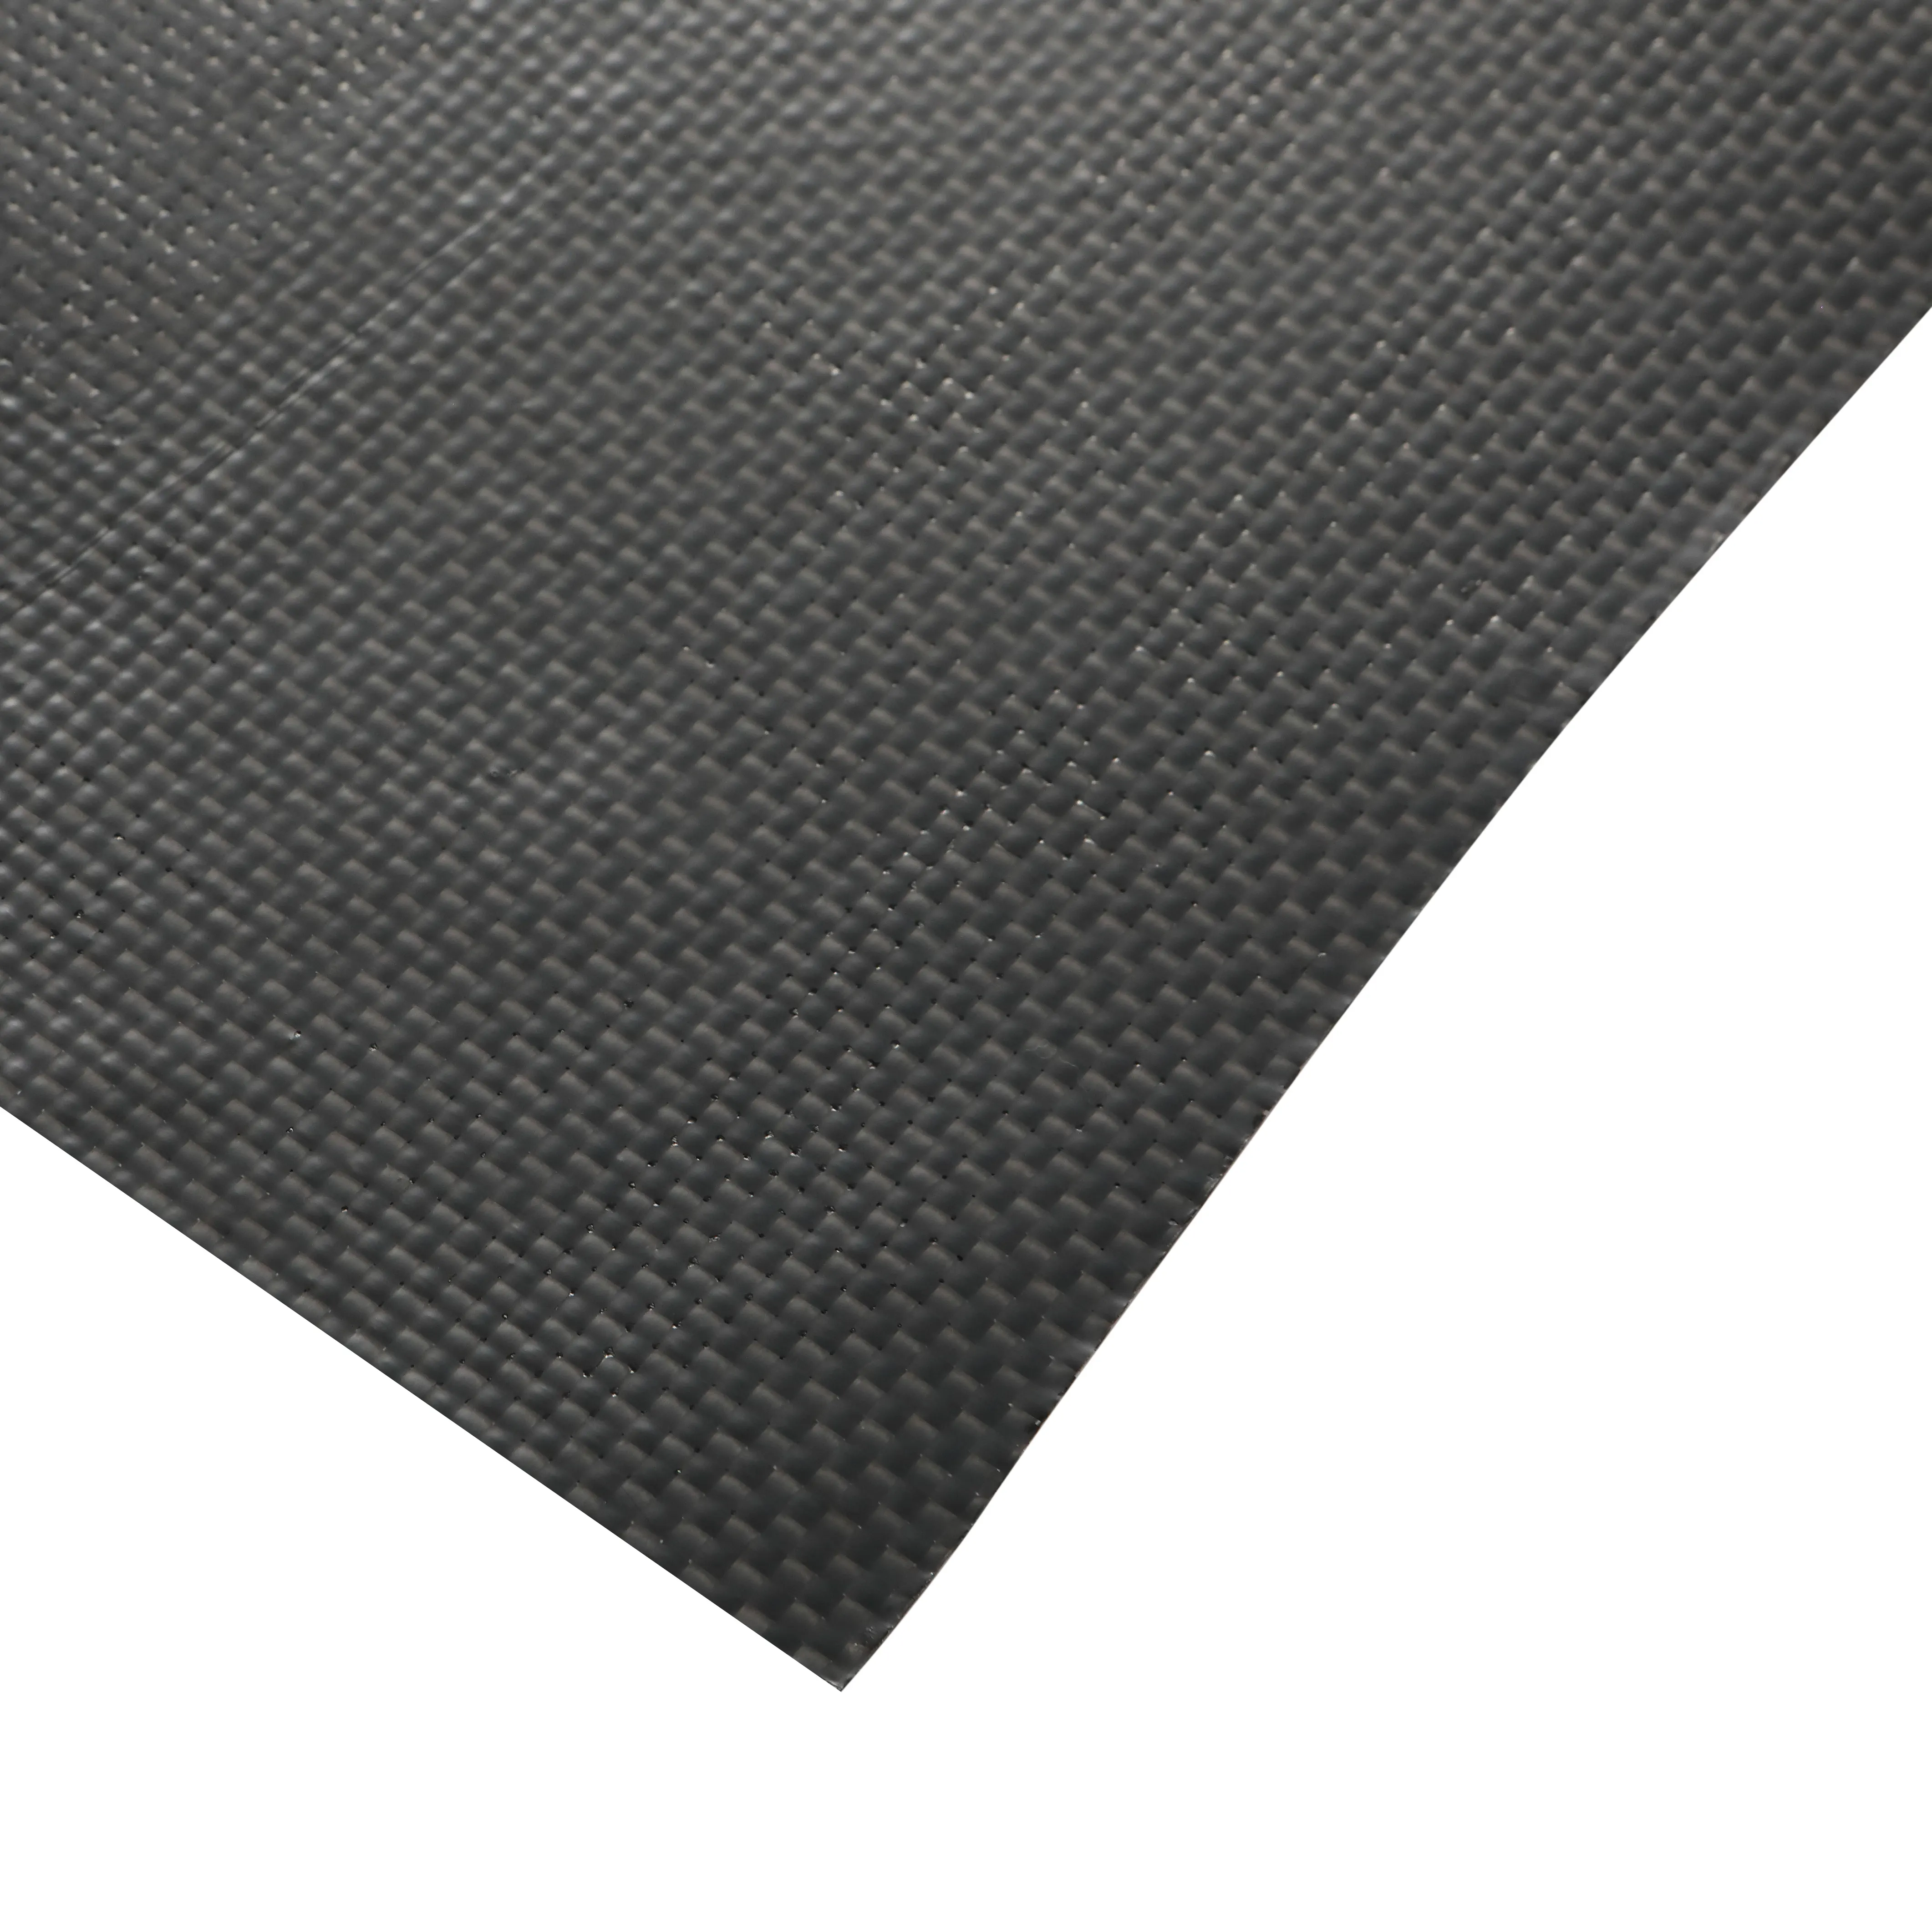 Alto desempenho 200GSM 3K Plain Weave Carbon Fiber Fabric para bicicleta/capacete